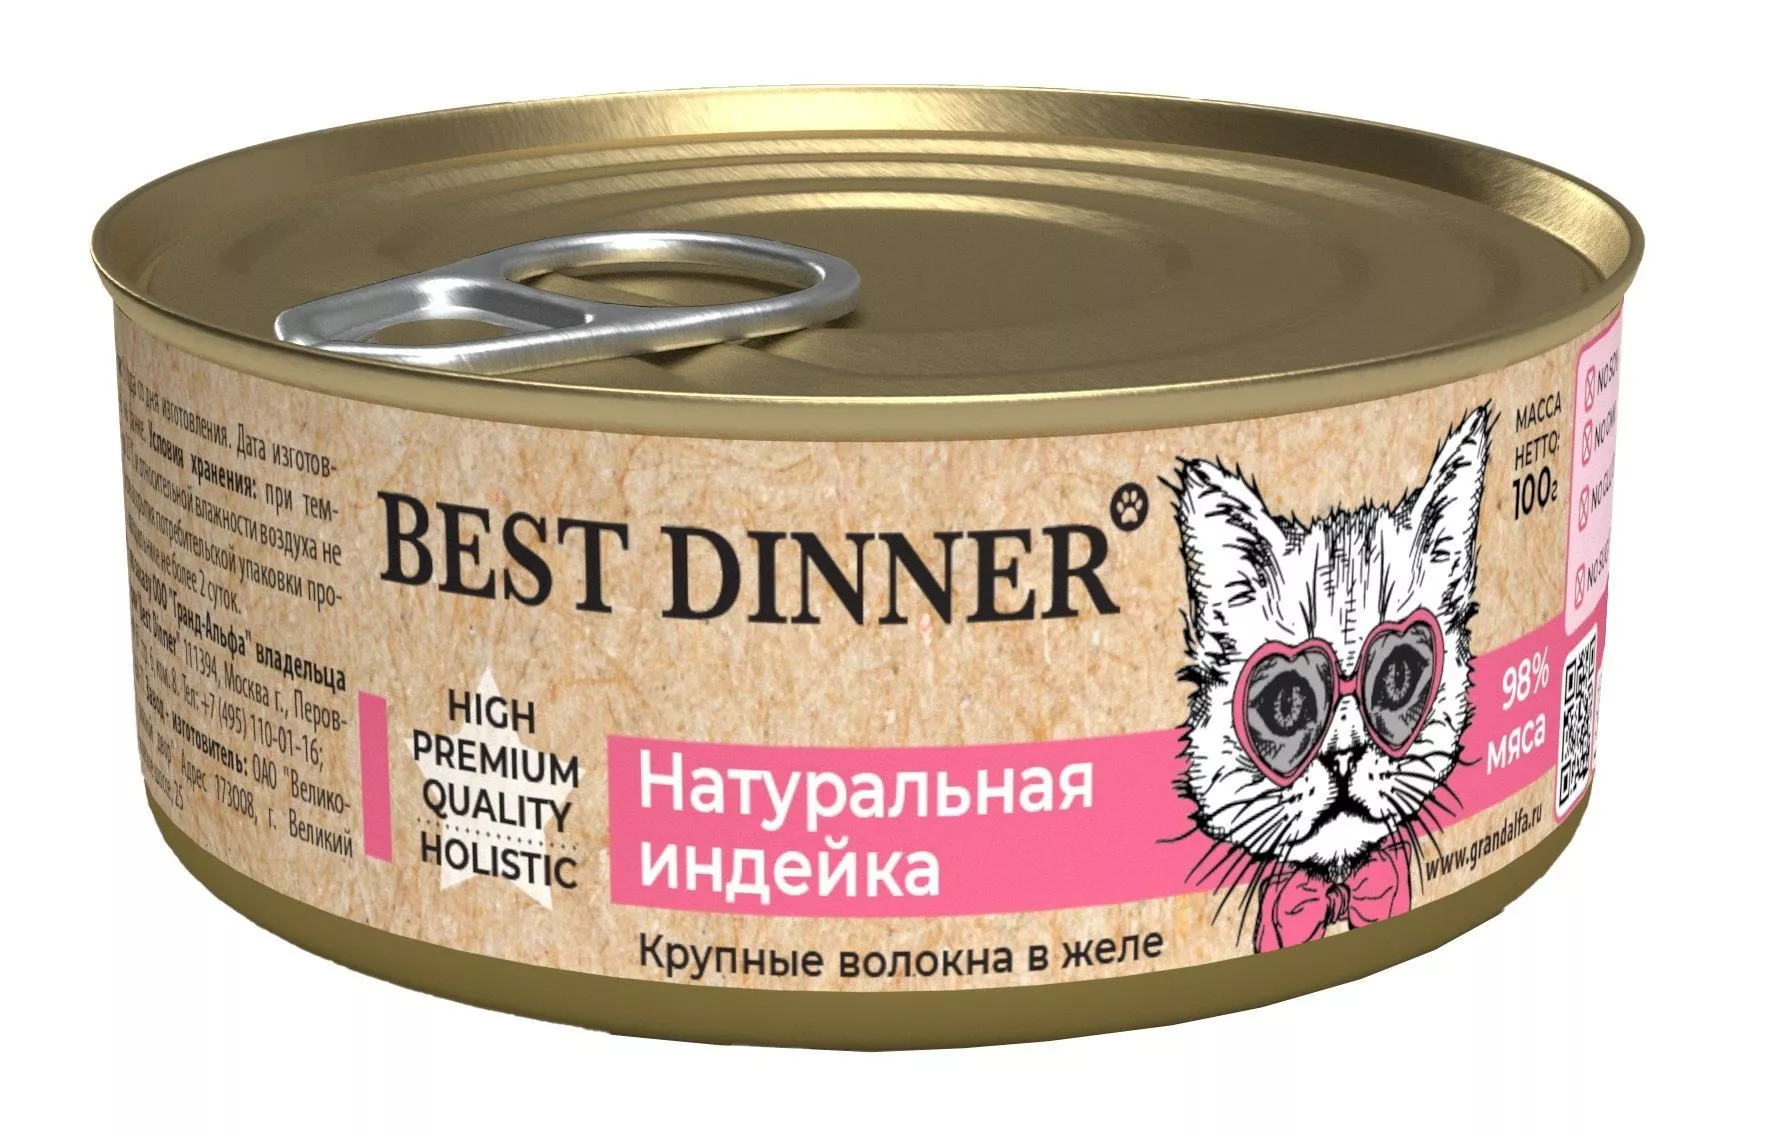 Best Dinner Higt Premium консервы 100г для кошек и котят натуральная индейка  фото, цены, купить